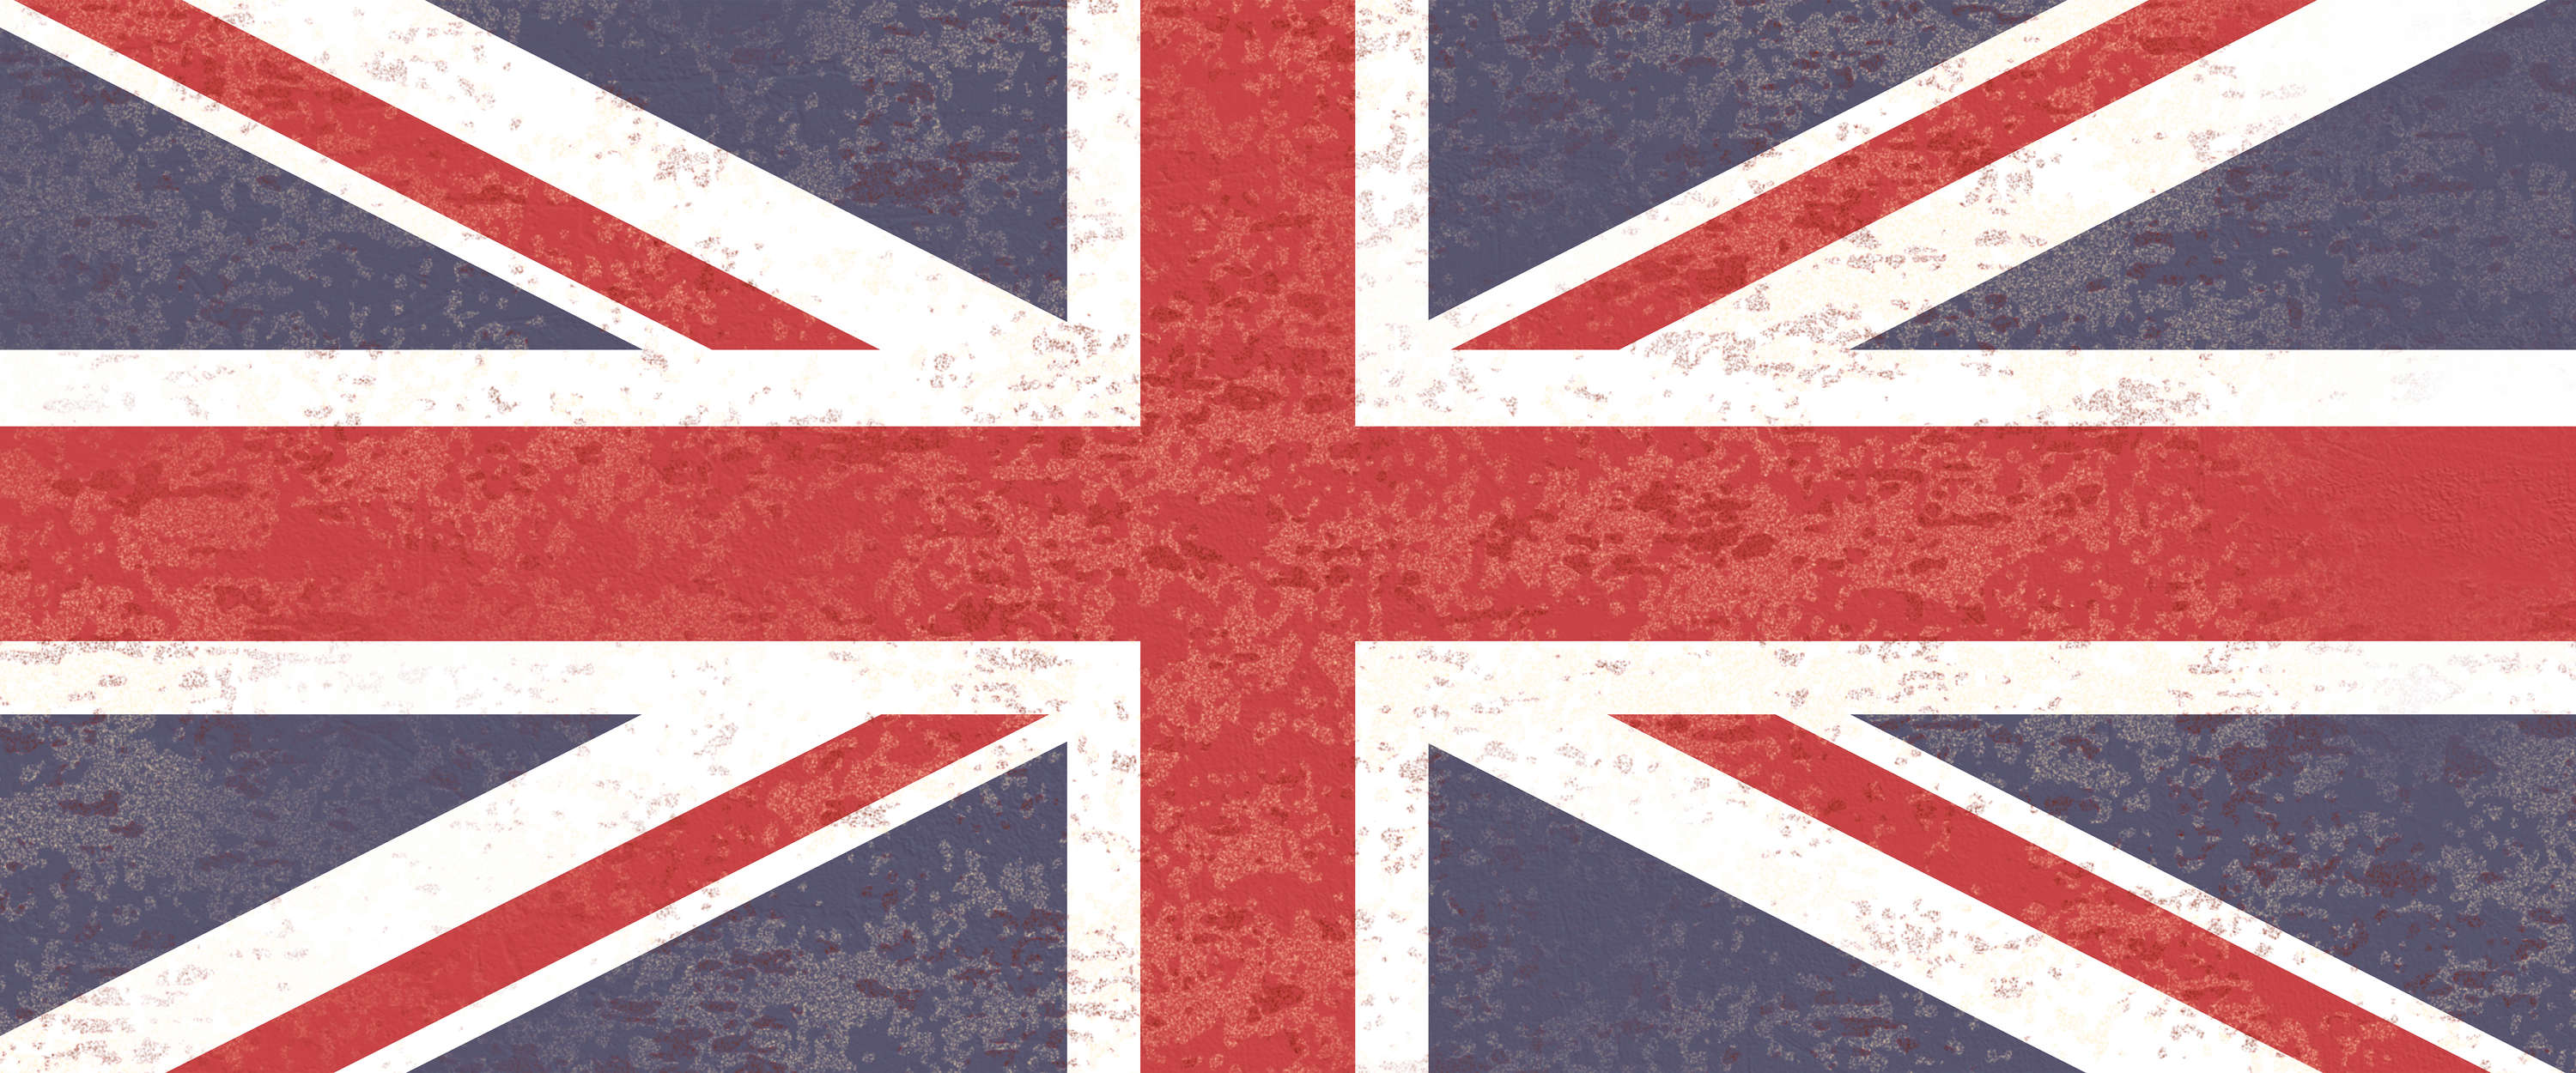             Fotomural tinta unicaon Jack - Bandera de Gran Bretaña
        